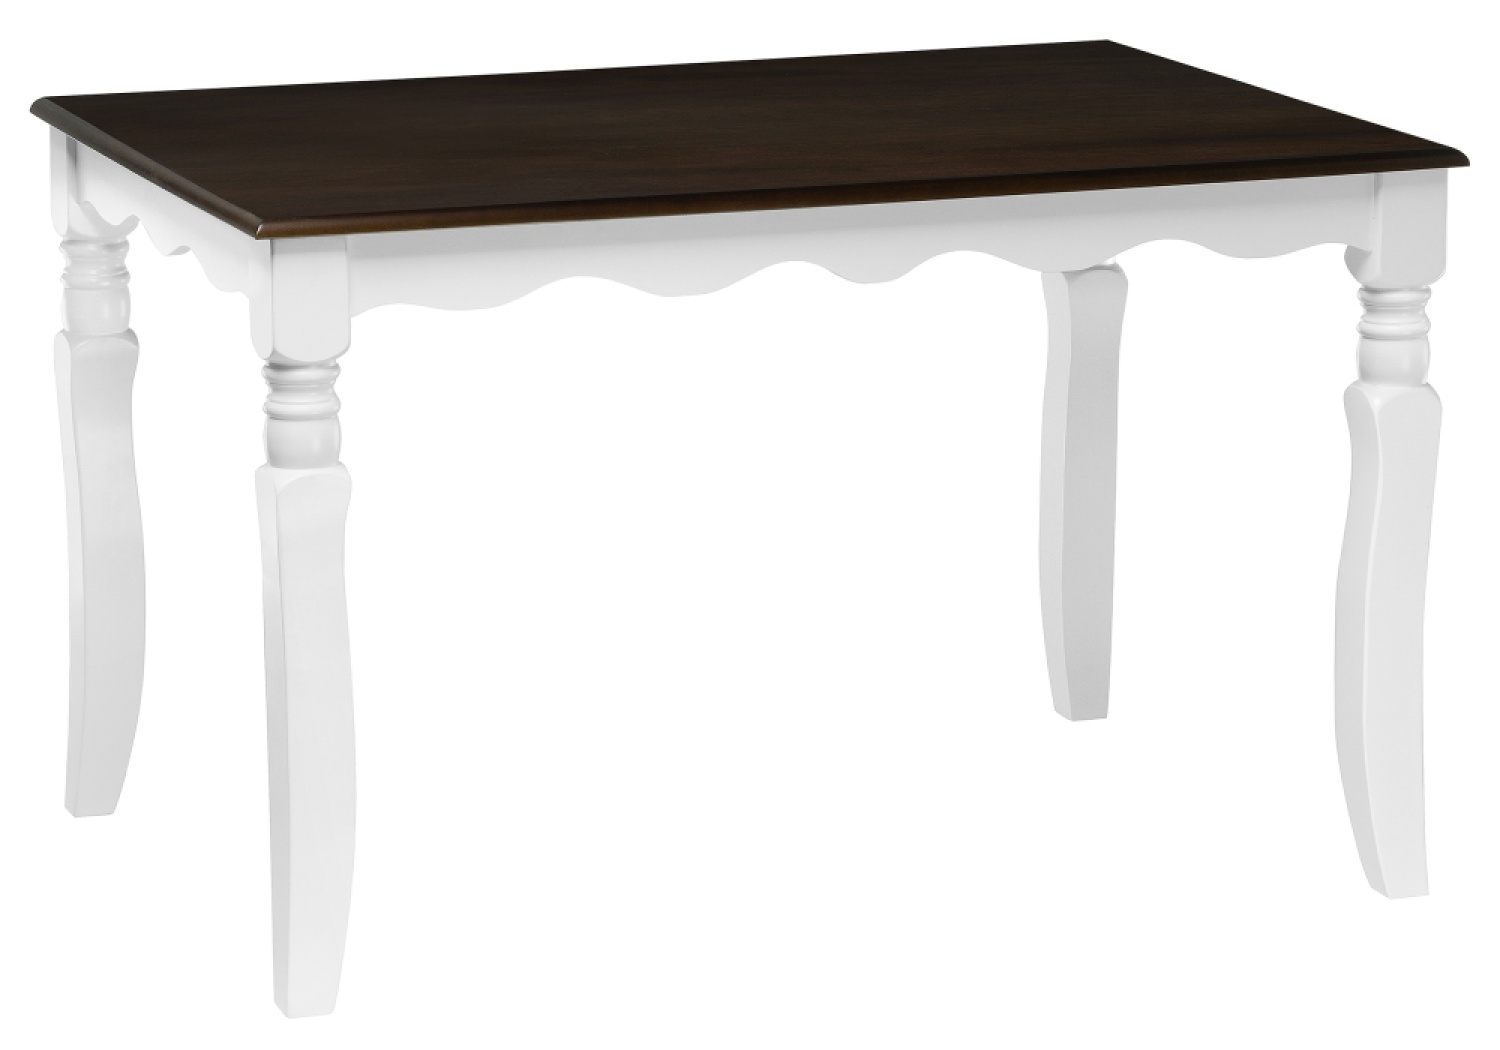 Деревянный стол Provance white / oak